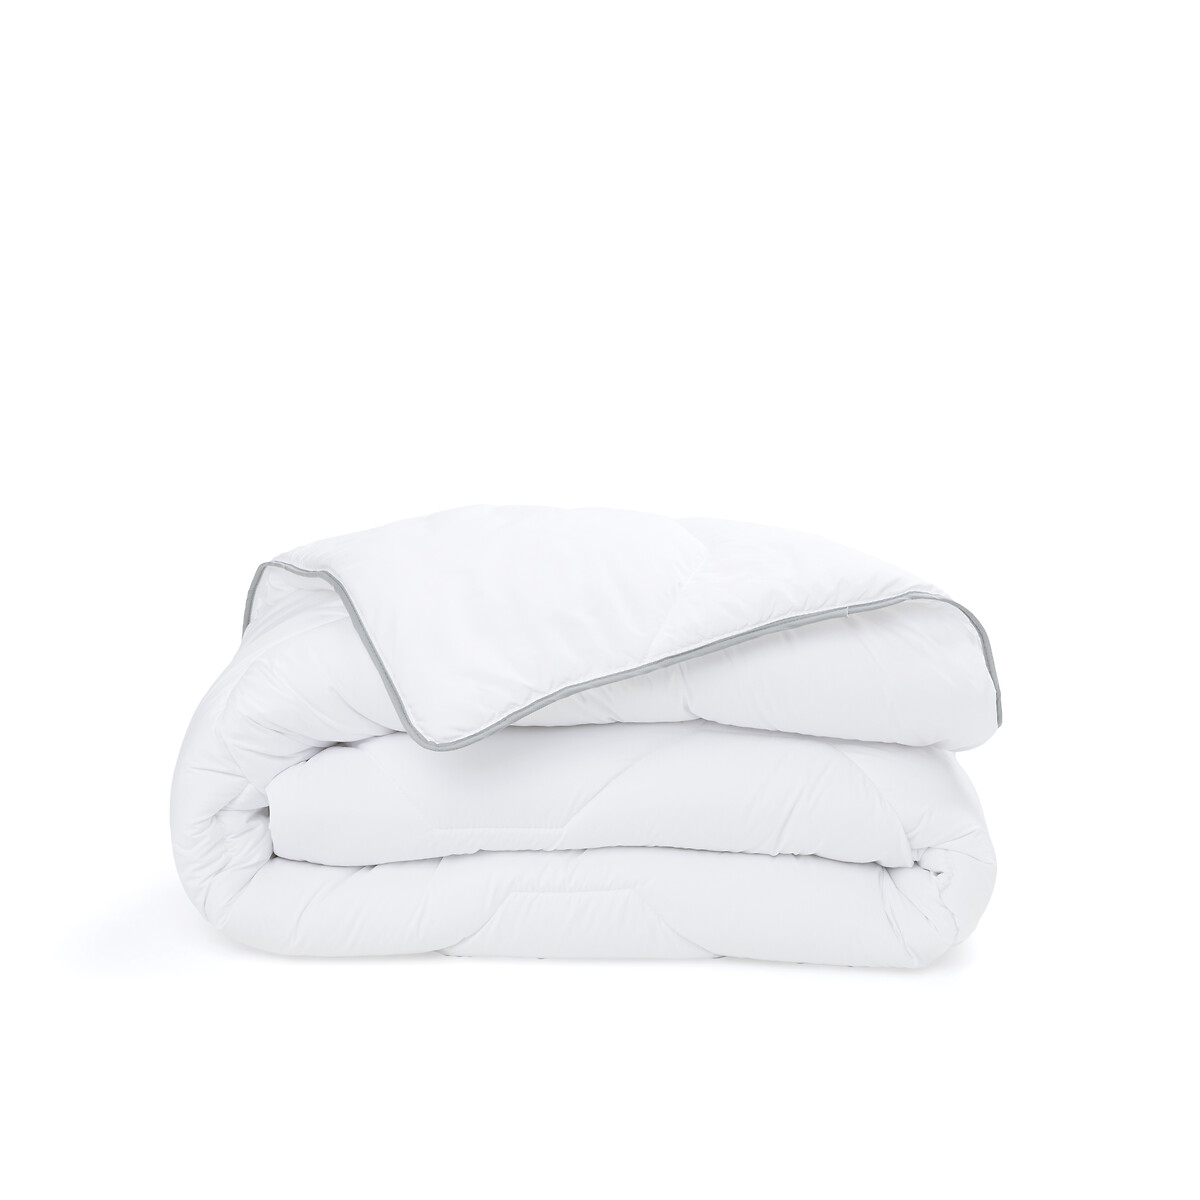 Одеяло из синтетического материала для прохладных помещений Confort htel  260 x 240 см белый LaRedoute, размер 260 x 240 см - фото 2